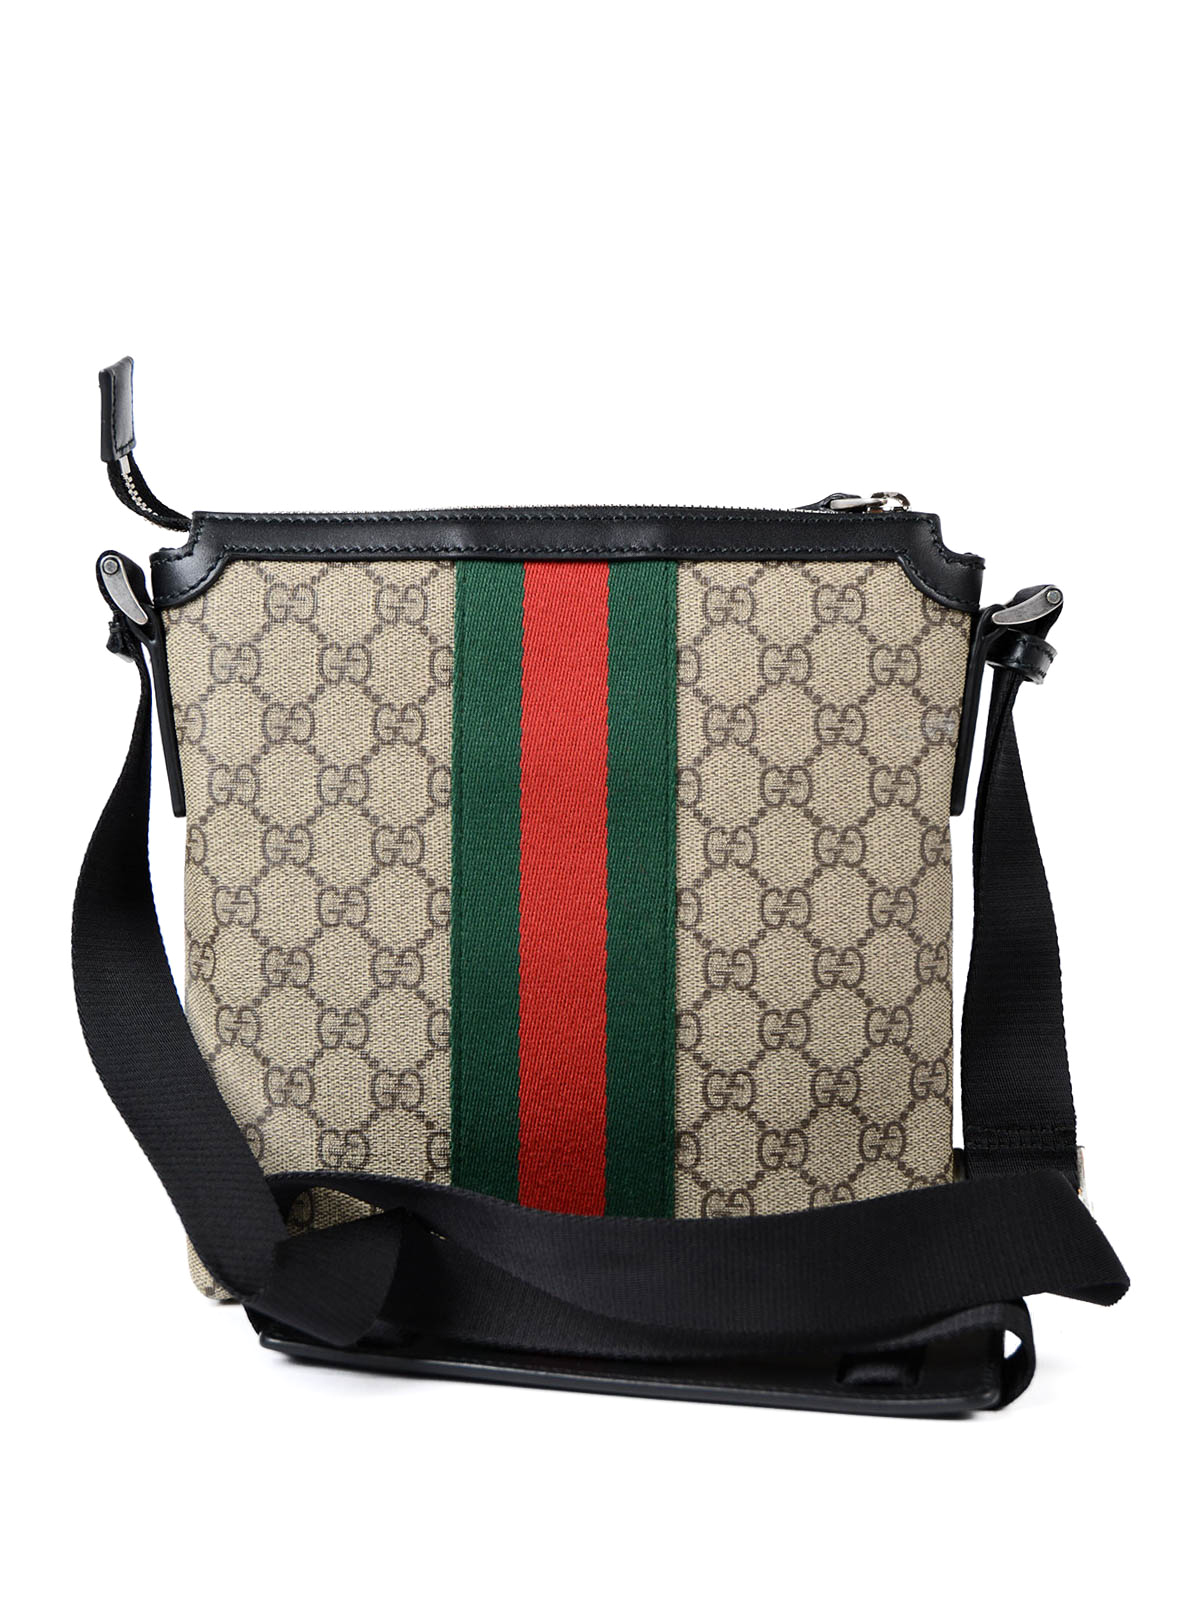 Gucci - GG Supreme Web messenger bag 